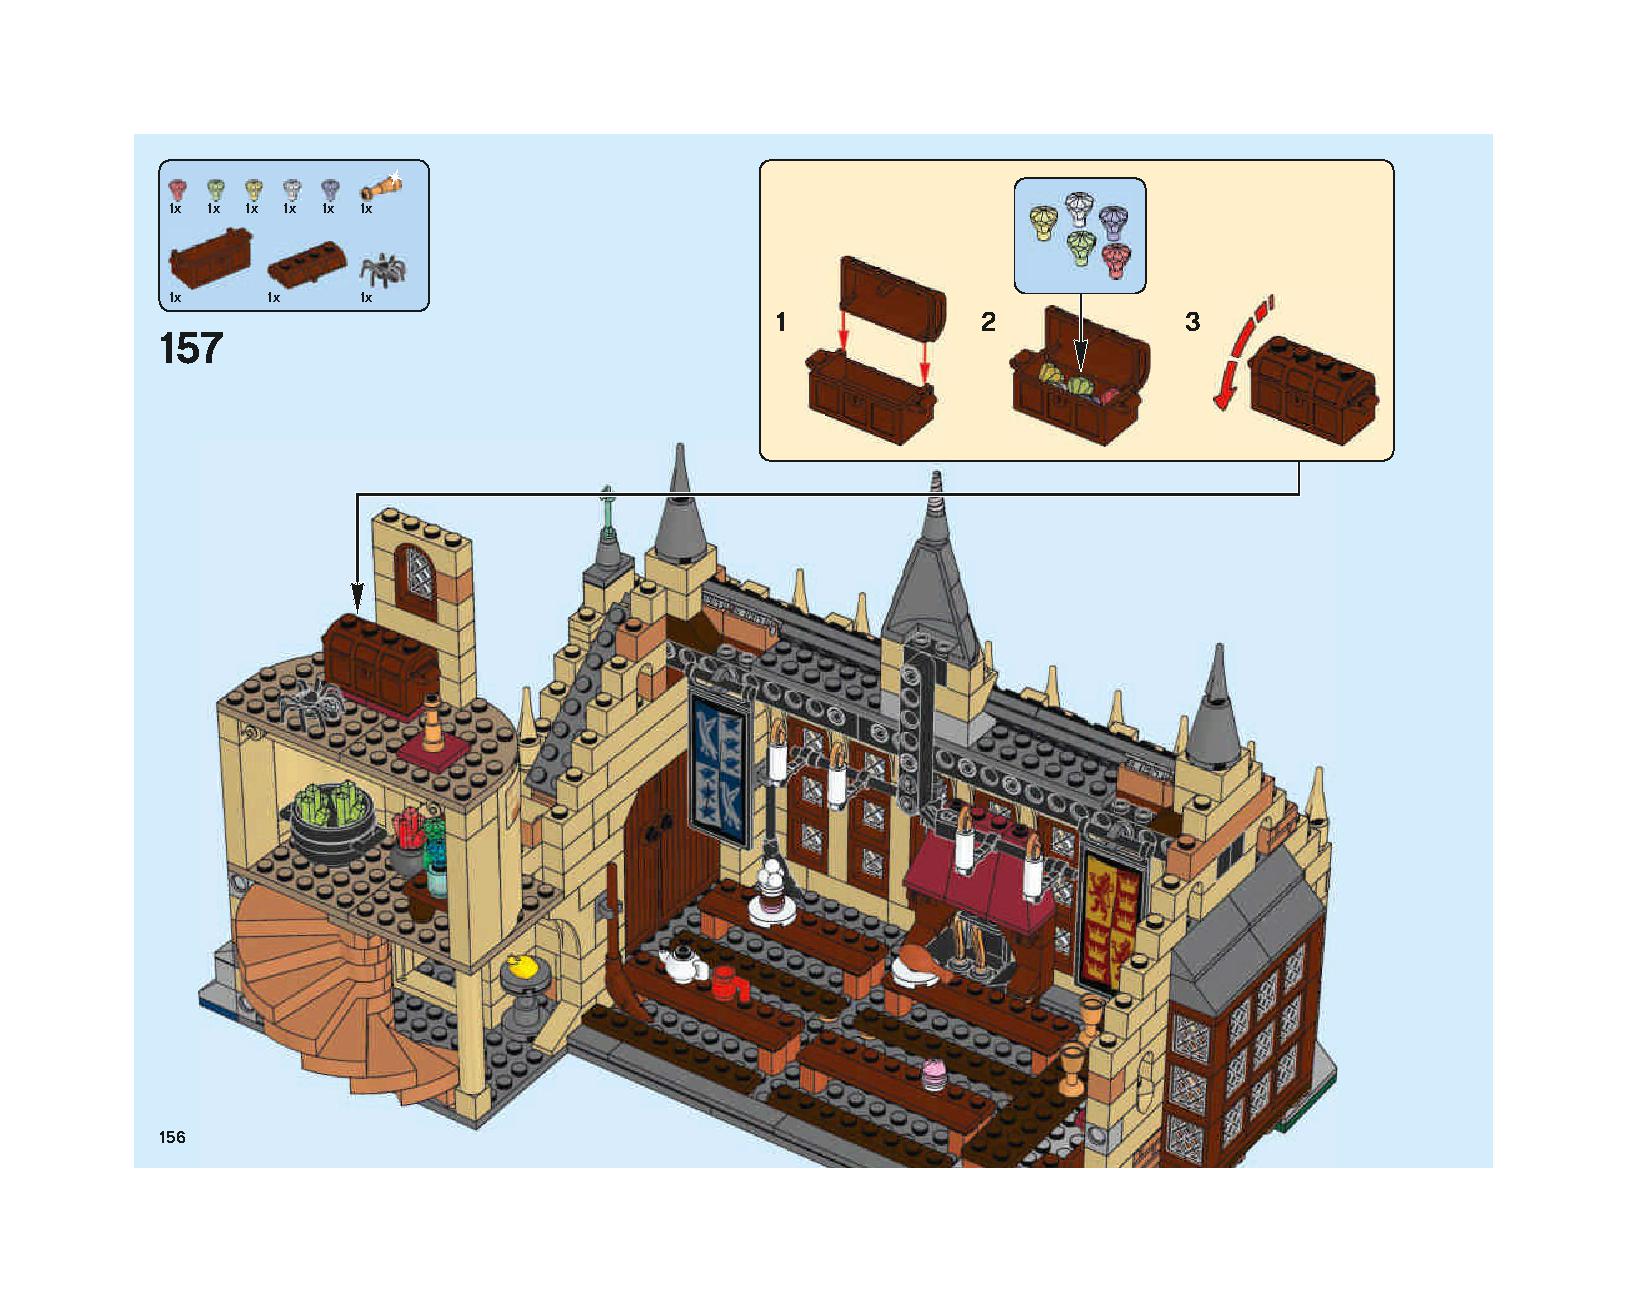 ホグワーツの大広間 75954 レゴの商品情報 レゴの説明書・組立方法 156 page